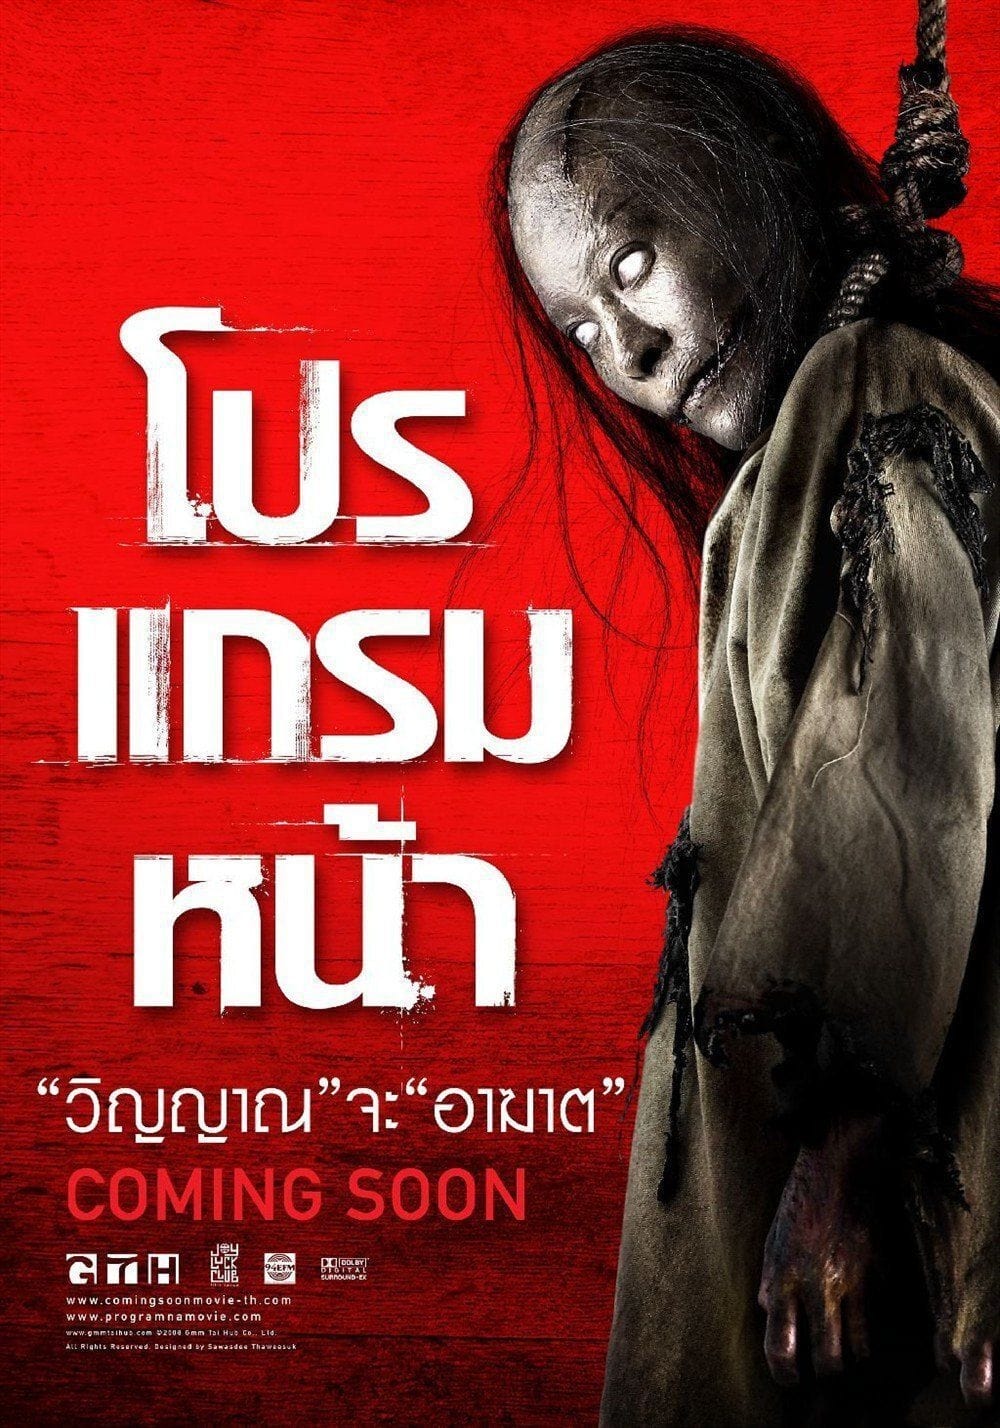 หนังผีไทย 8 เรื่อง สุดหลอนระดับตำนาน น่ากลัวจนลืมไม่ลง คอหนังสยองขวัญไม่ควรพลาด 0811